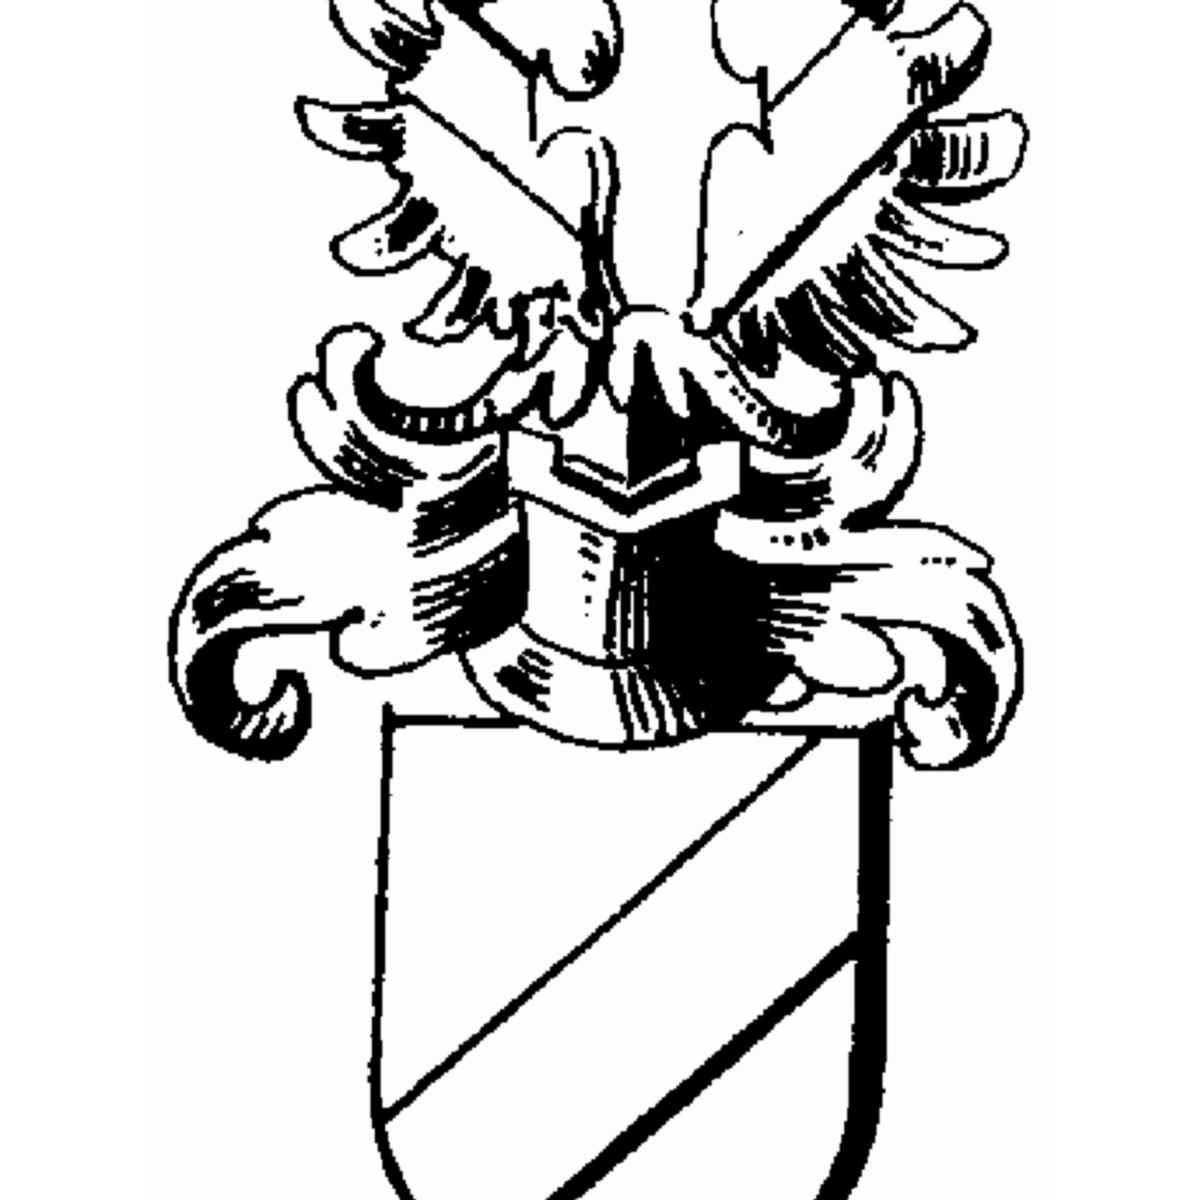 Wappen der Familie Ries